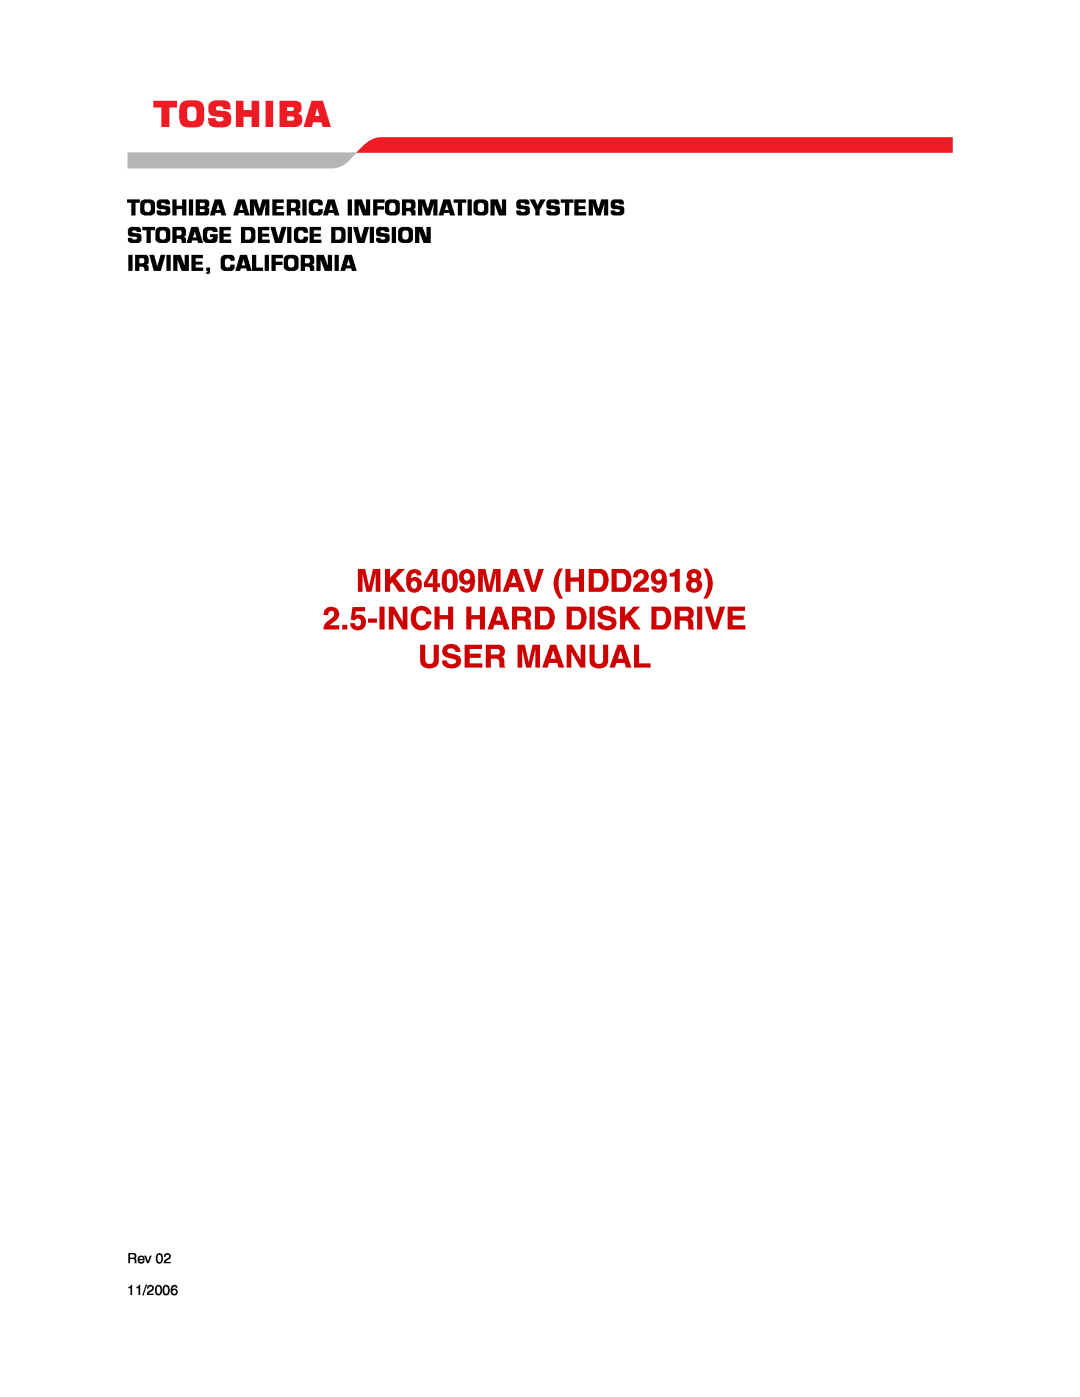 Toshiba user manual MK6409MAV HDD2918 2.5-INCH HARD DISK DRIVE USER MANUAL, Irvine, California, Rev 11/2006 